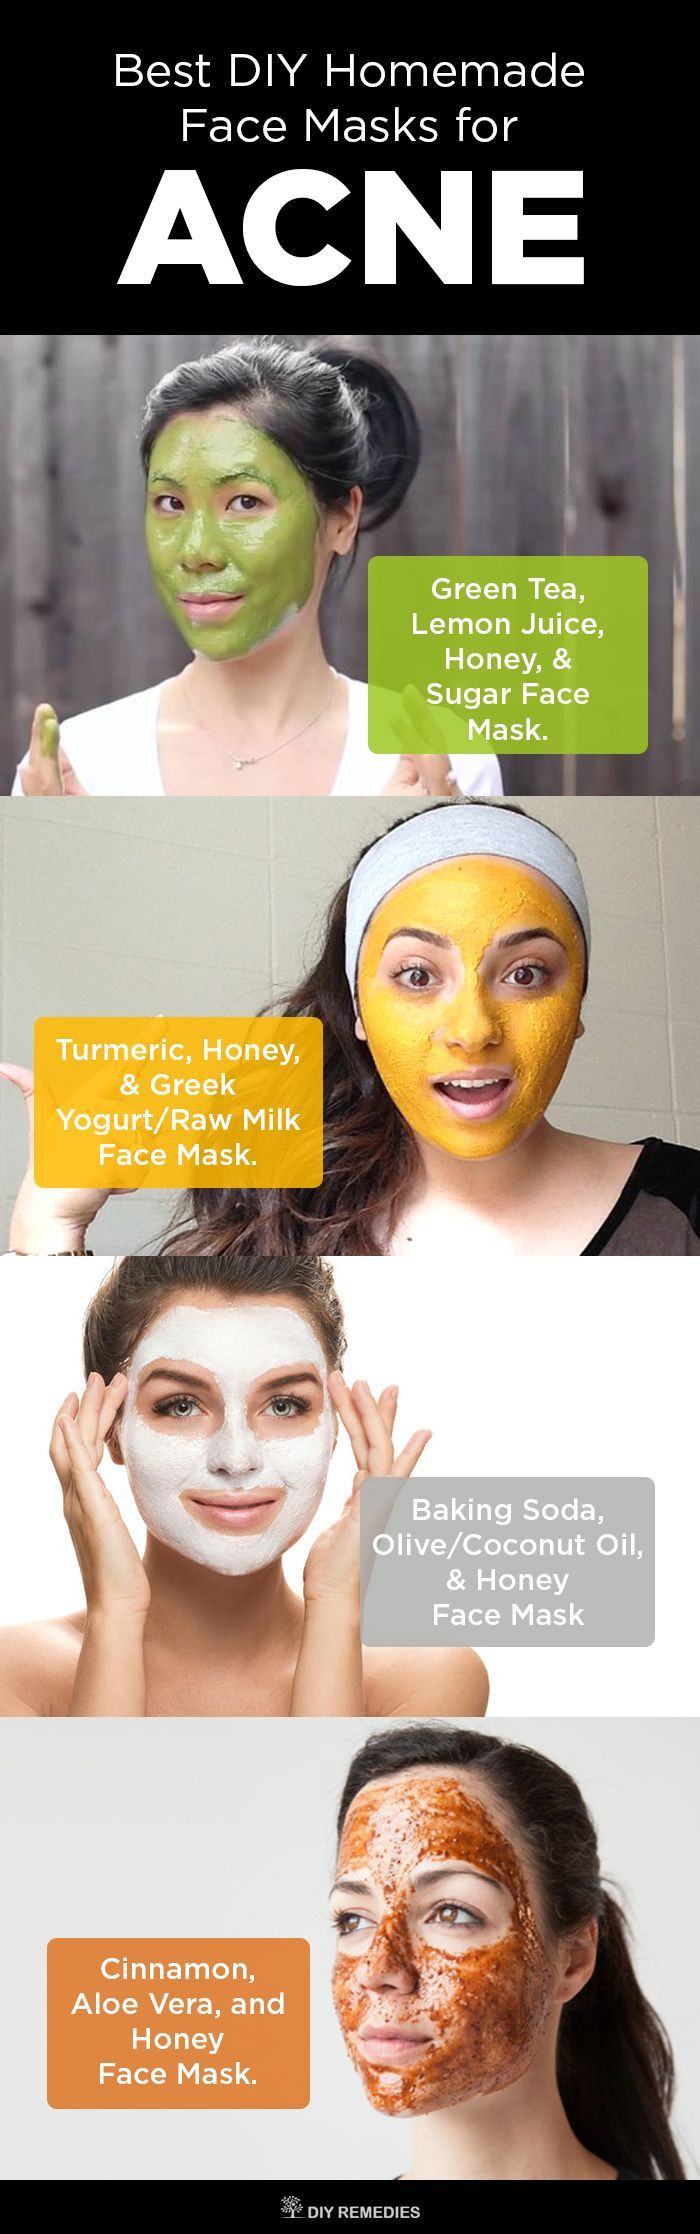 Acne Masks DIY
 6 Best DIY Homemade Face Masks for Acne